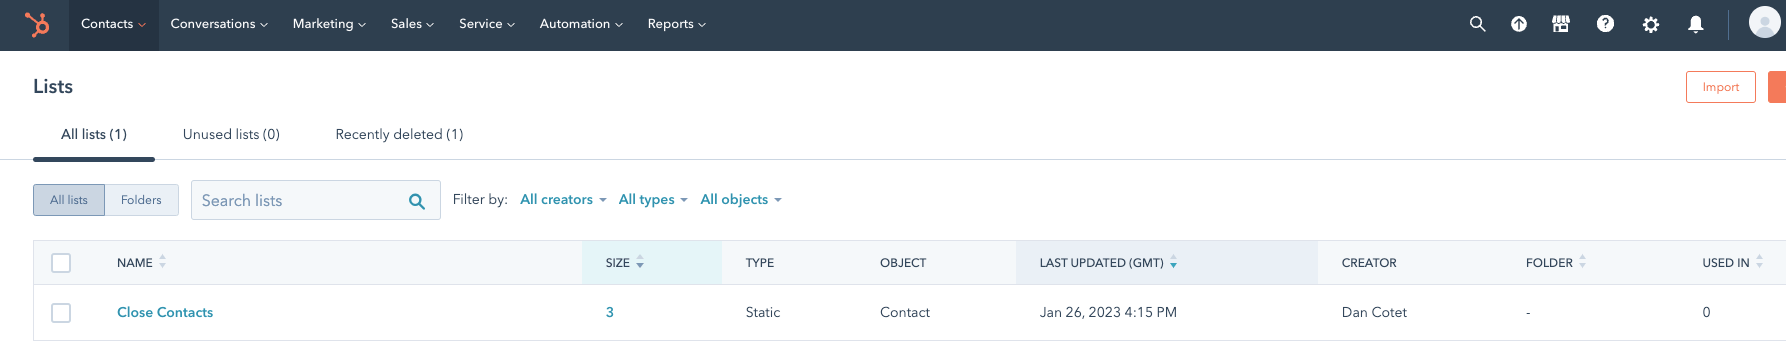 Una página de lista de HubSpot en la que se resalta que los contactos necesitan estar asociados con listas dentro de HubSpot.